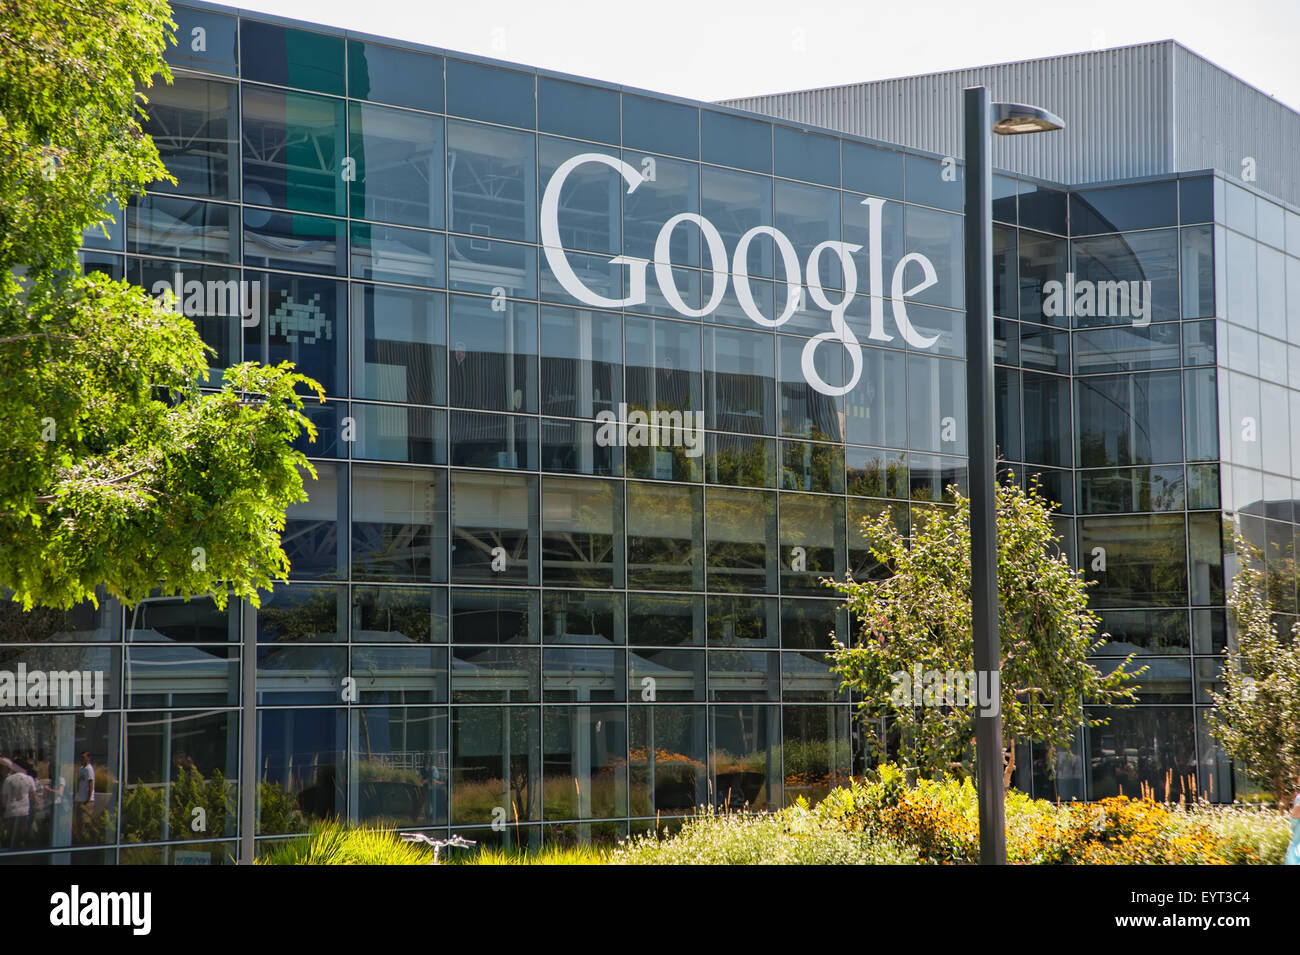 MOUNTAIN VIEW, CALIFORNIE - 1 août 2015 : siège de Google, également connu sous le nom de Googleplex, à Mountain View, Californie le 1 août 2015 Banque D'Images